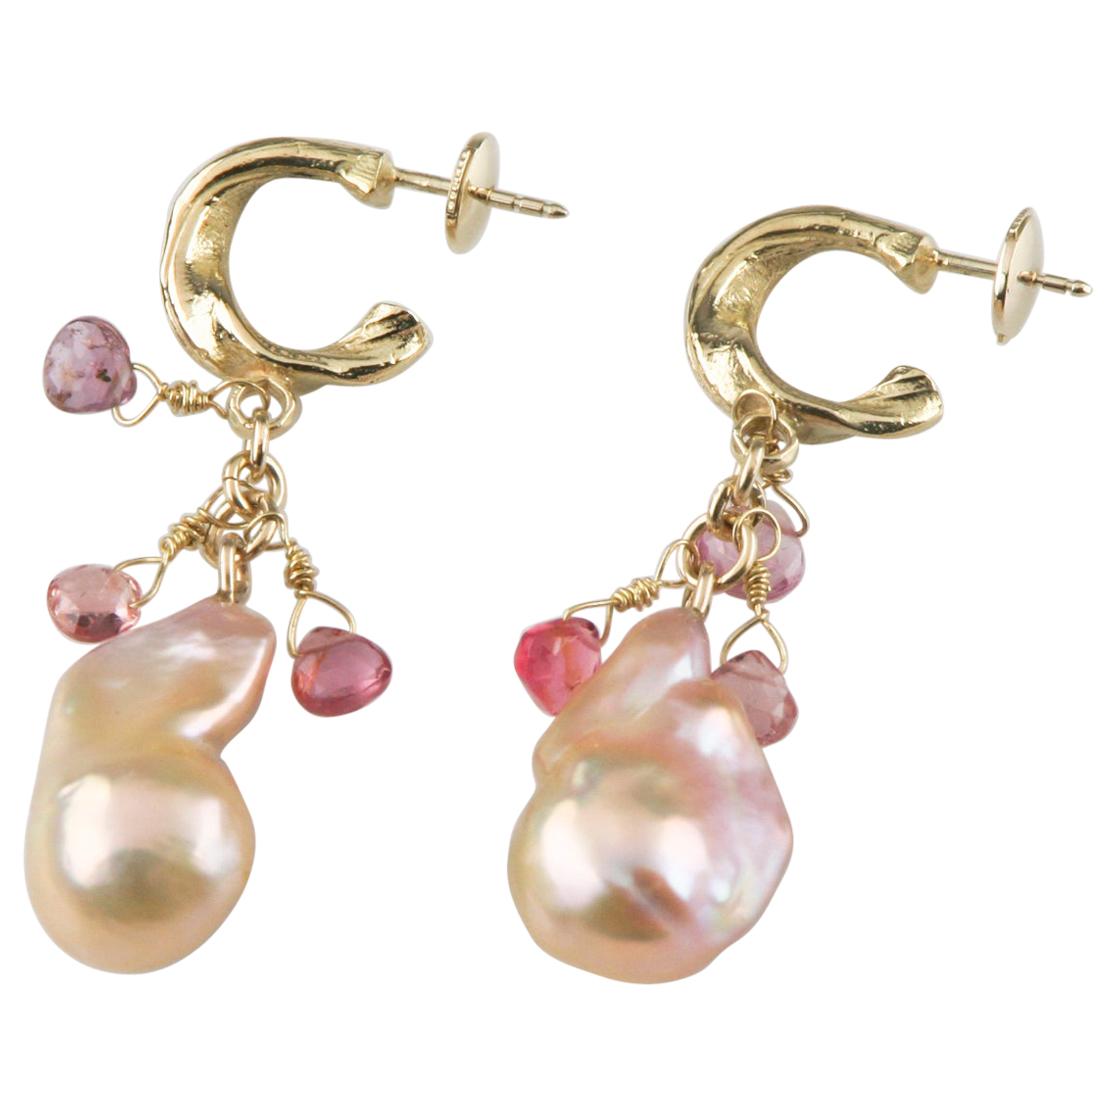 Barocke Ohrringe aus Gelbgold mit Perlen und Briolette-Edelsteinen